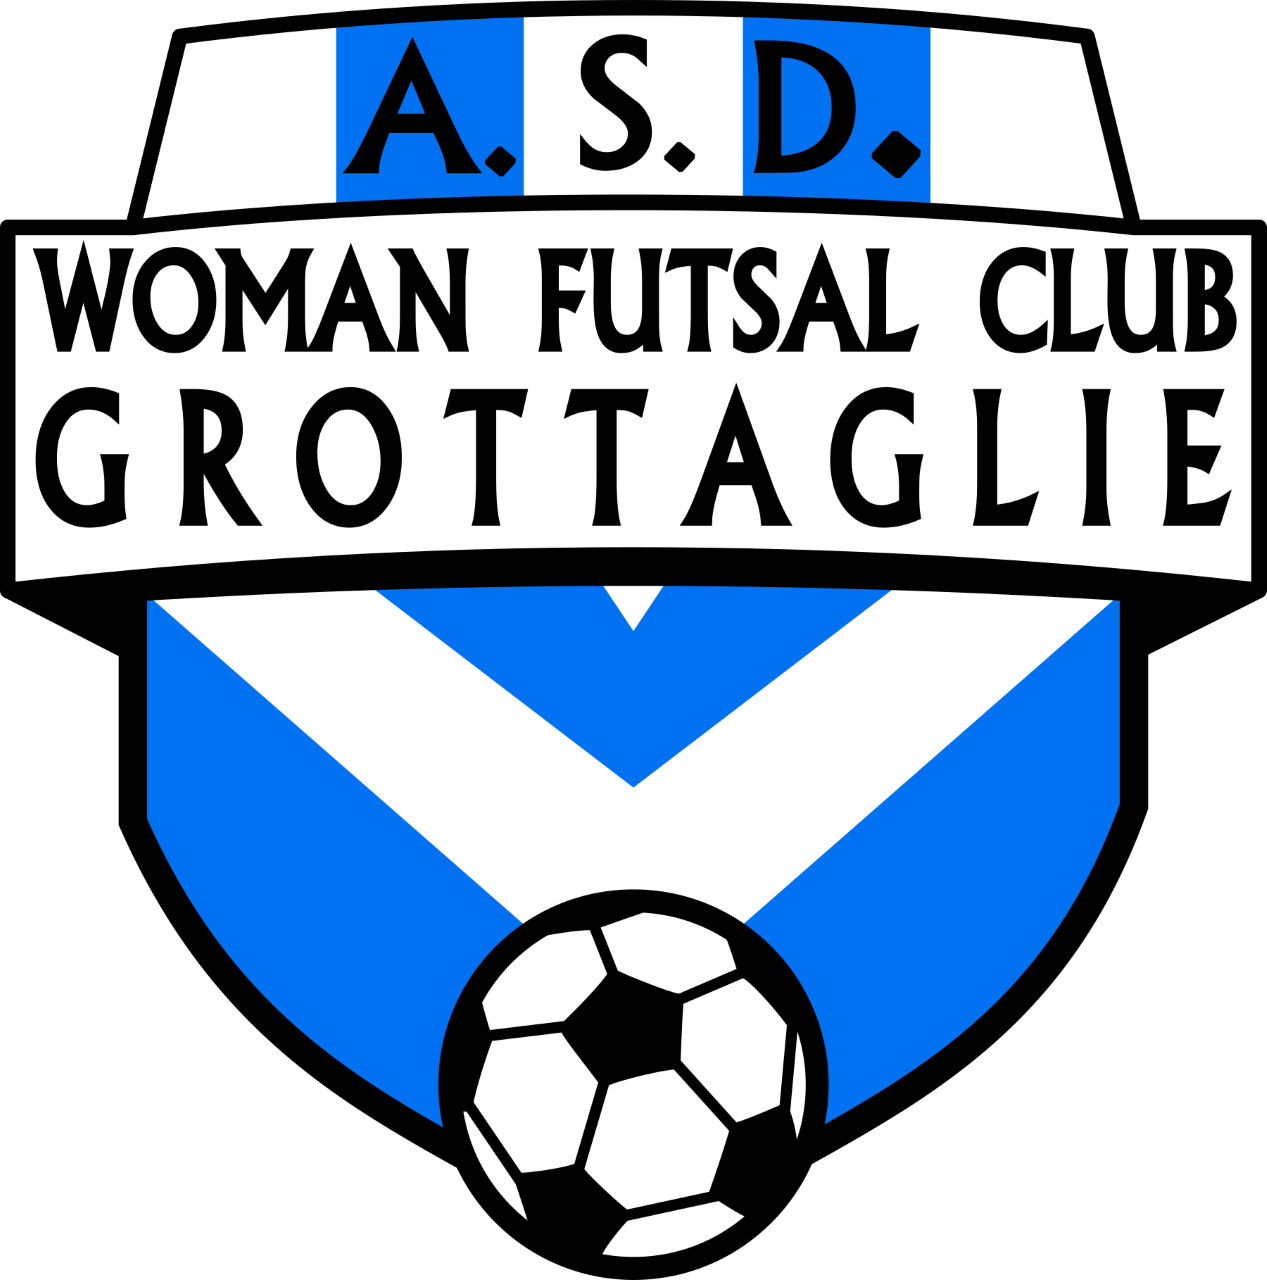 La Woman Futsal Club Grottaglie inizierà la sua storia dal campionato di serie A2 di futsal femminile